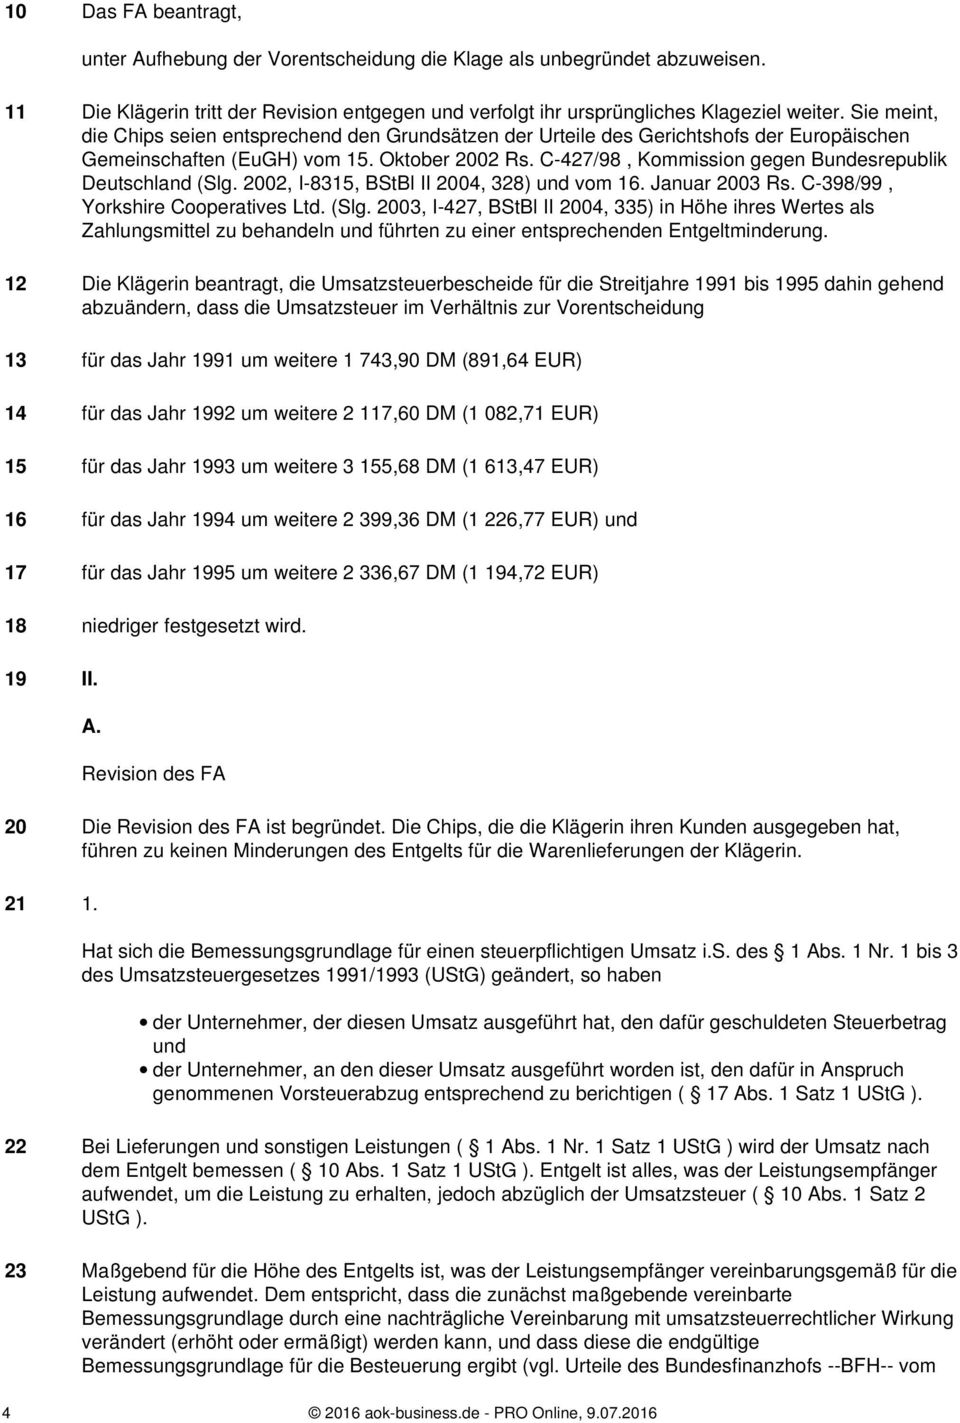 C-427/98, Kommission gegen Bundesrepublik Deutschland (Slg. 2002, I-8315, BStBl II 2004, 328) und vom 16. Januar 2003 Rs. C-398/99, Yorkshire Cooperatives Ltd. (Slg. 2003, I-427, BStBl II 2004, 335) in Höhe ihres Wertes als Zahlungsmittel zu behandeln und führten zu einer entsprechenden Entgeltminderung.